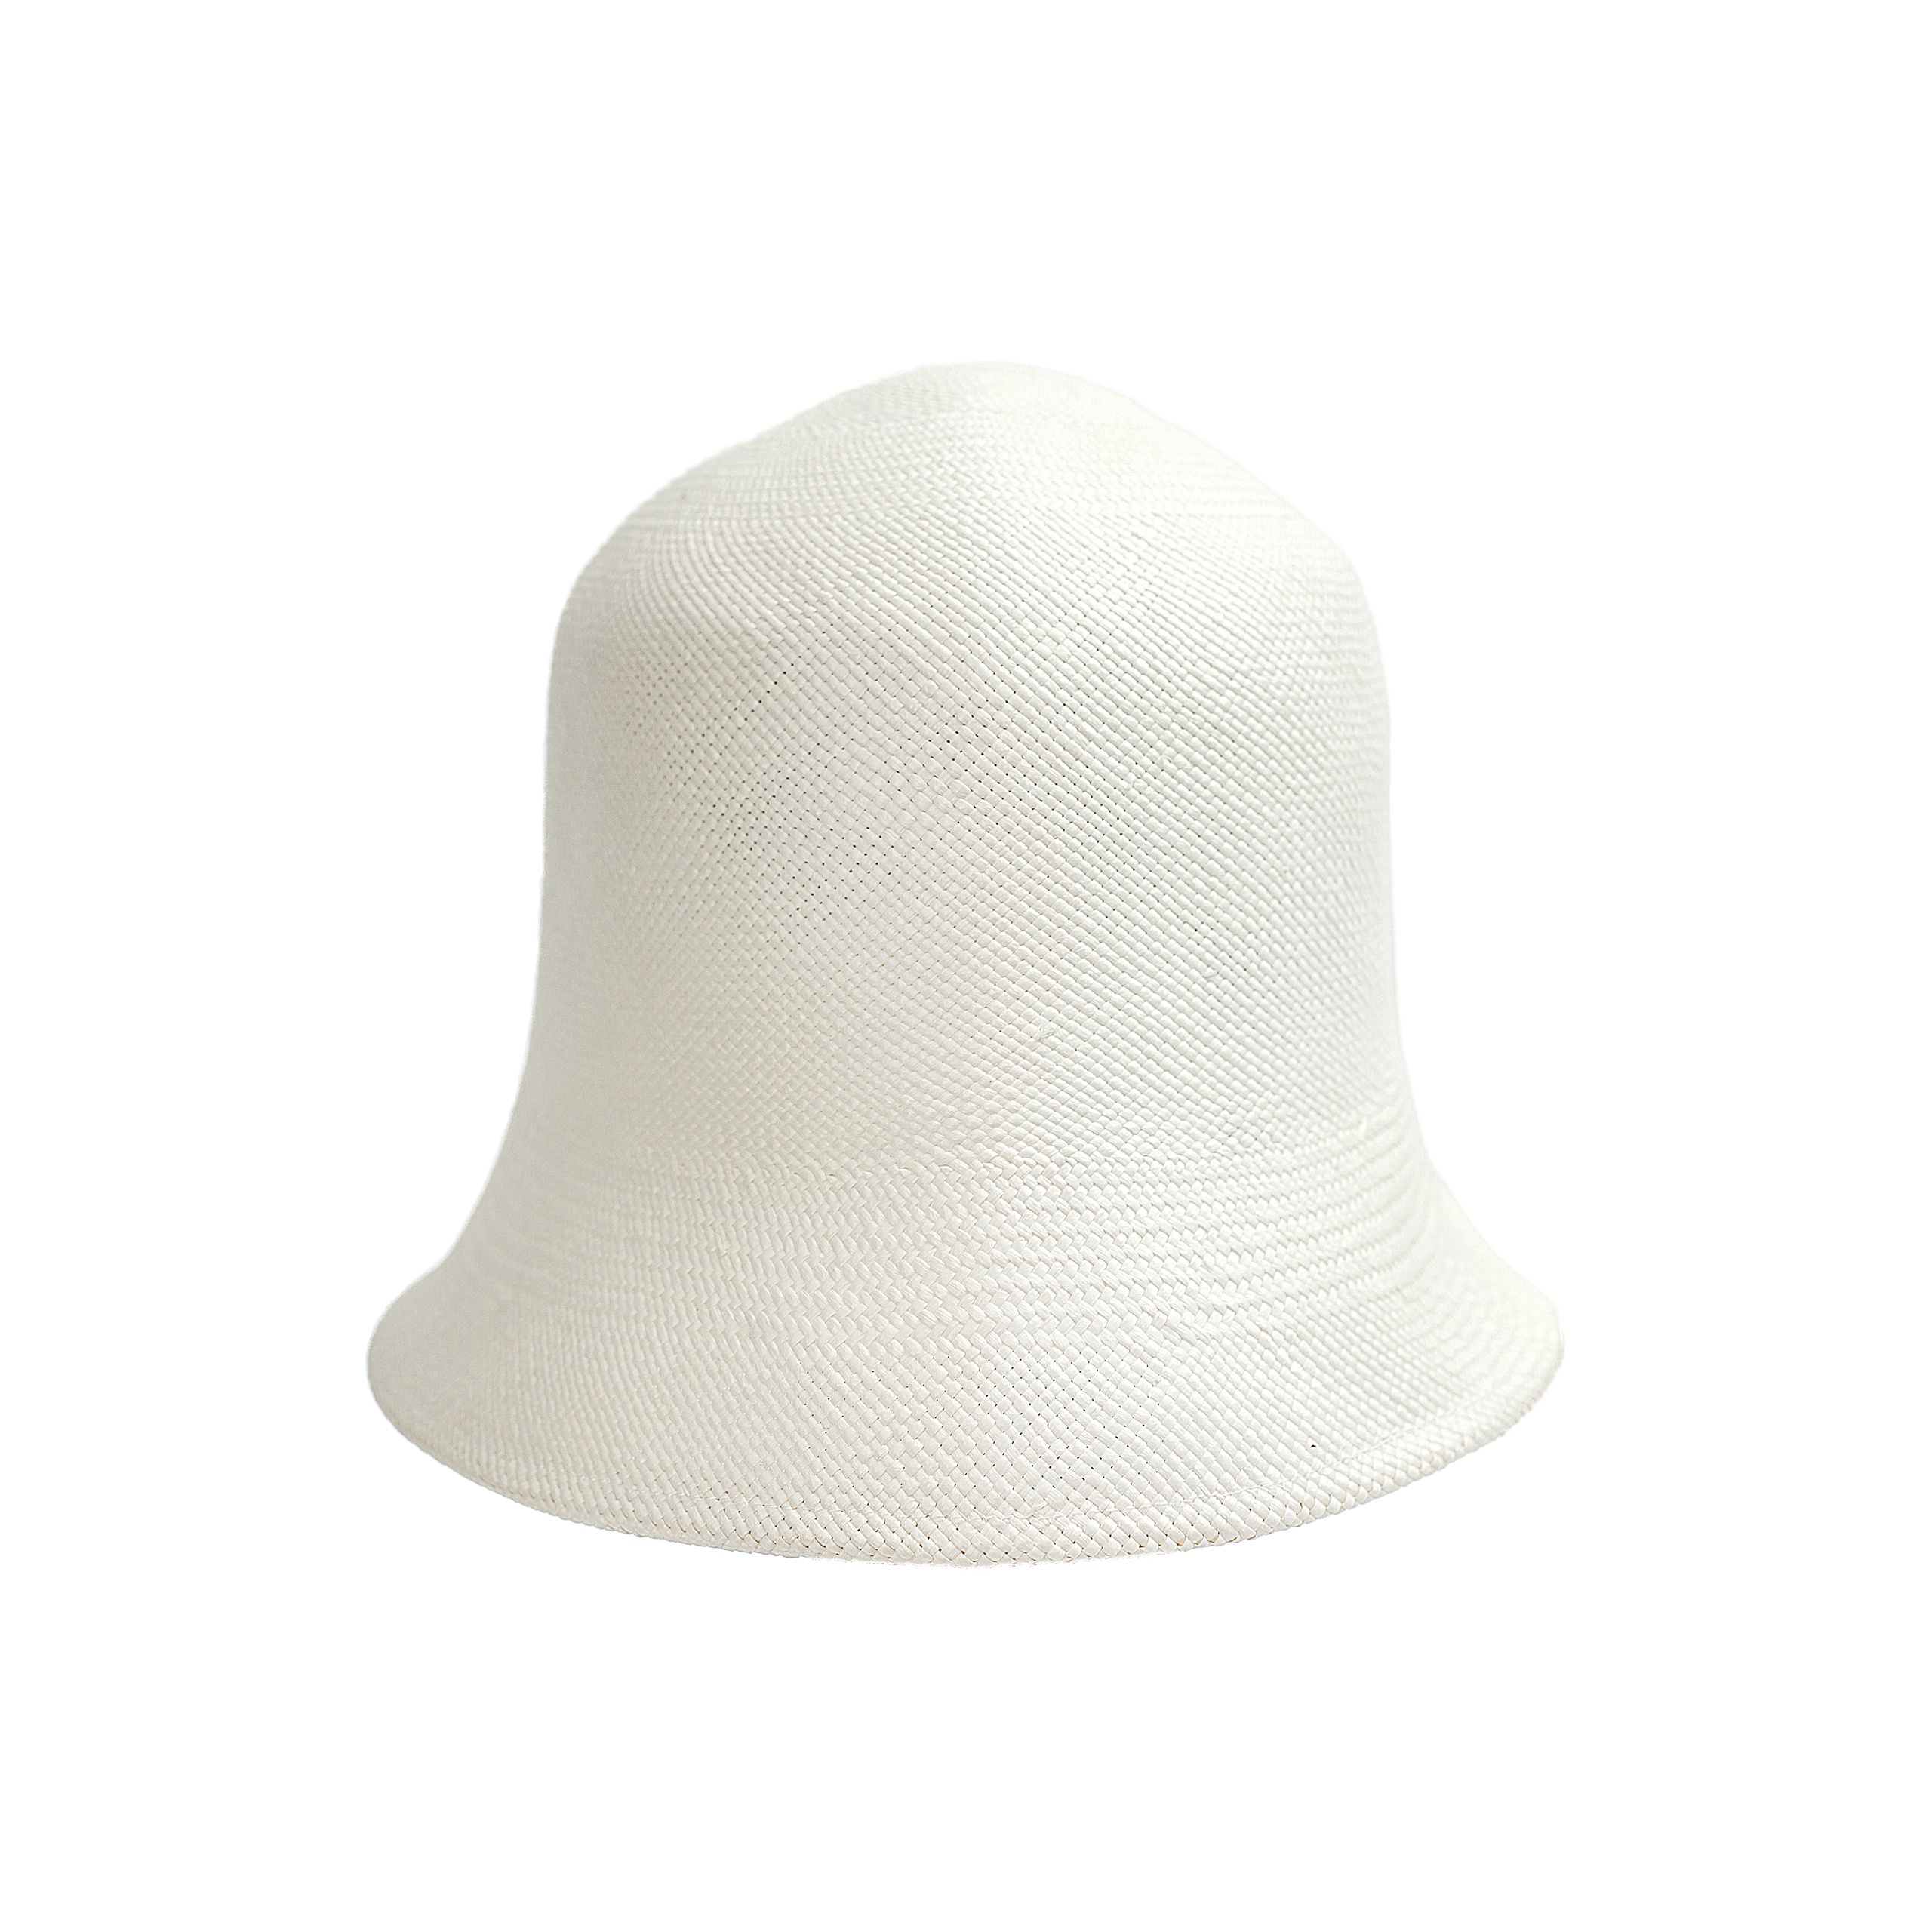 WHITE TOQUILLA HAT - 4